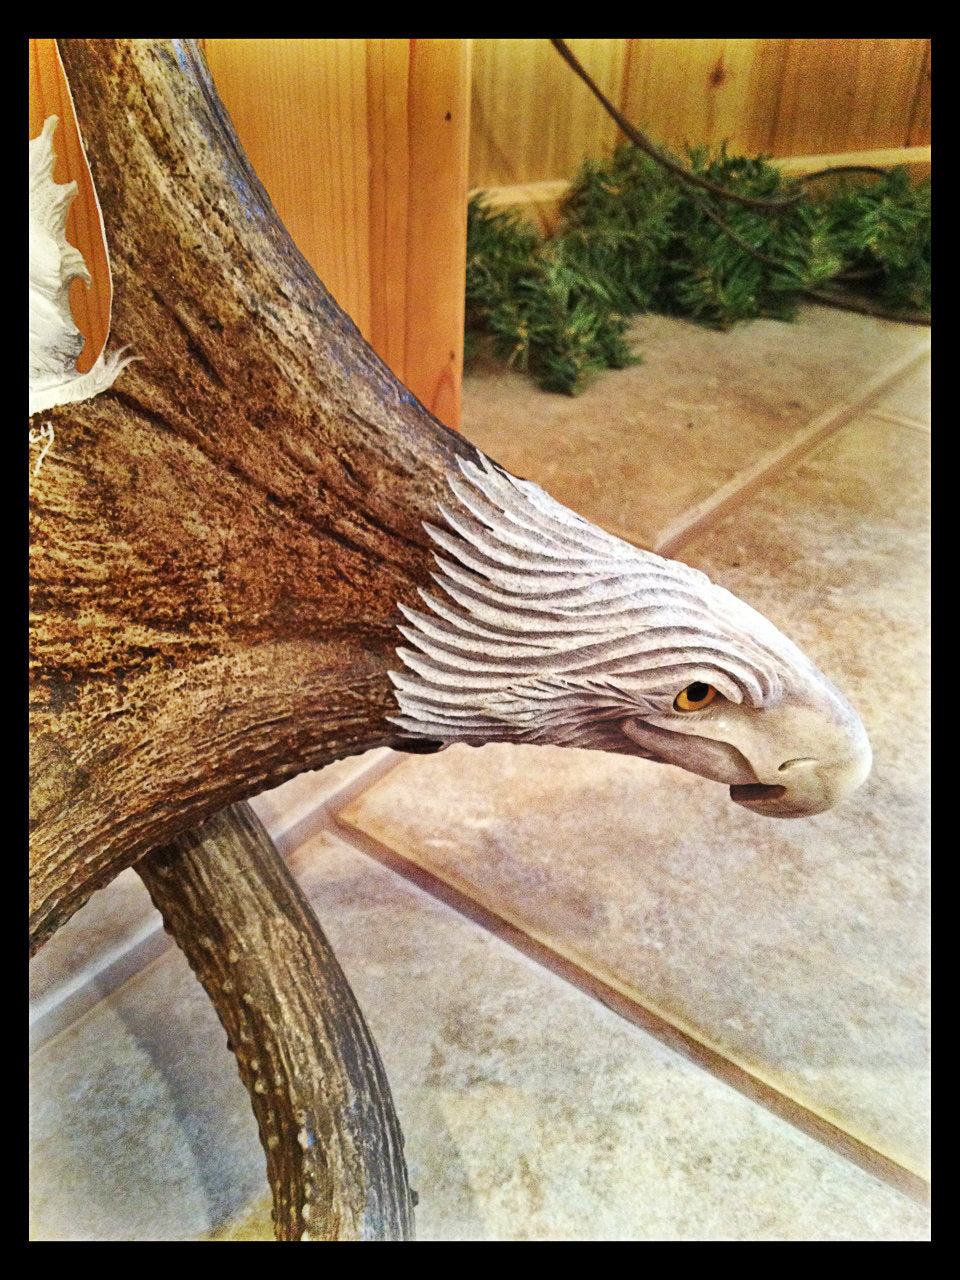 Soaring Eagle Antler Carving w/Antler Base